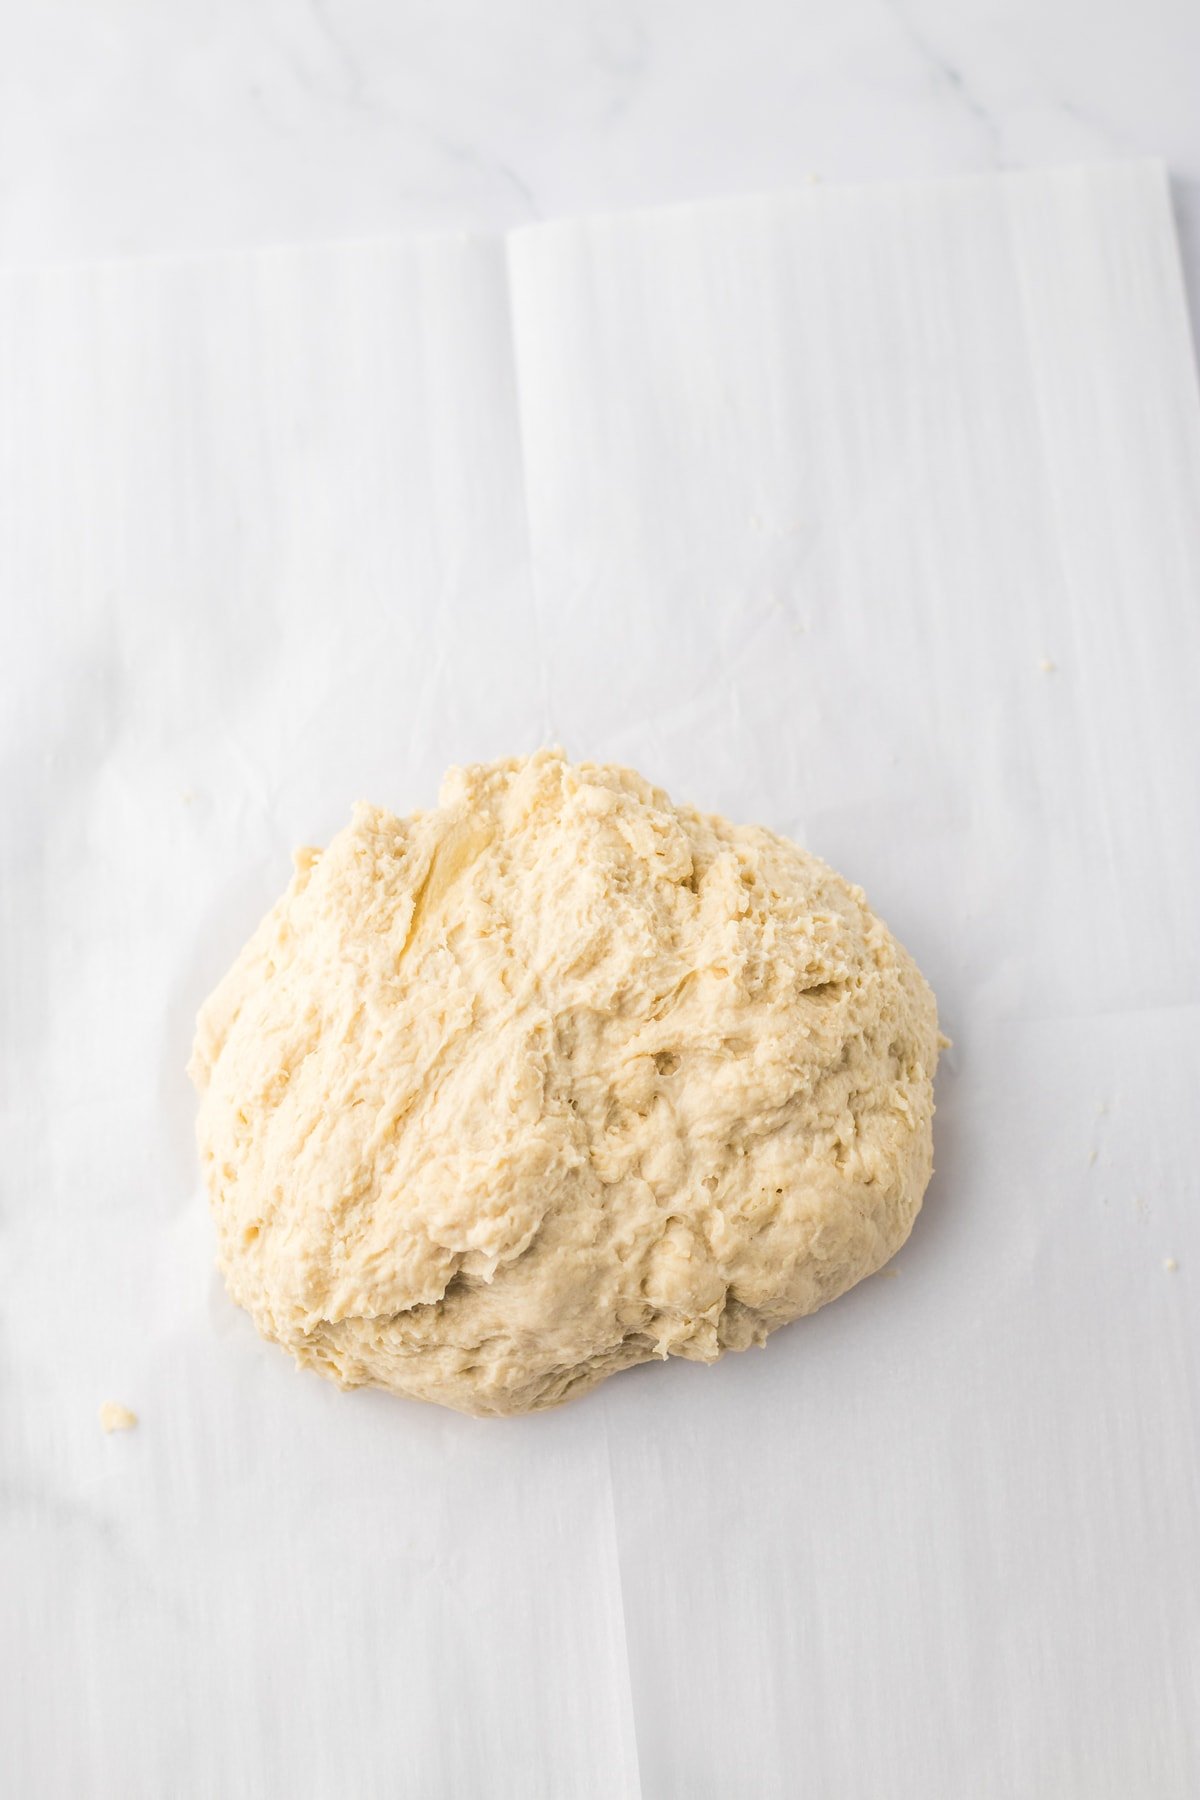 Crock Pot Bread dough on parchment paper